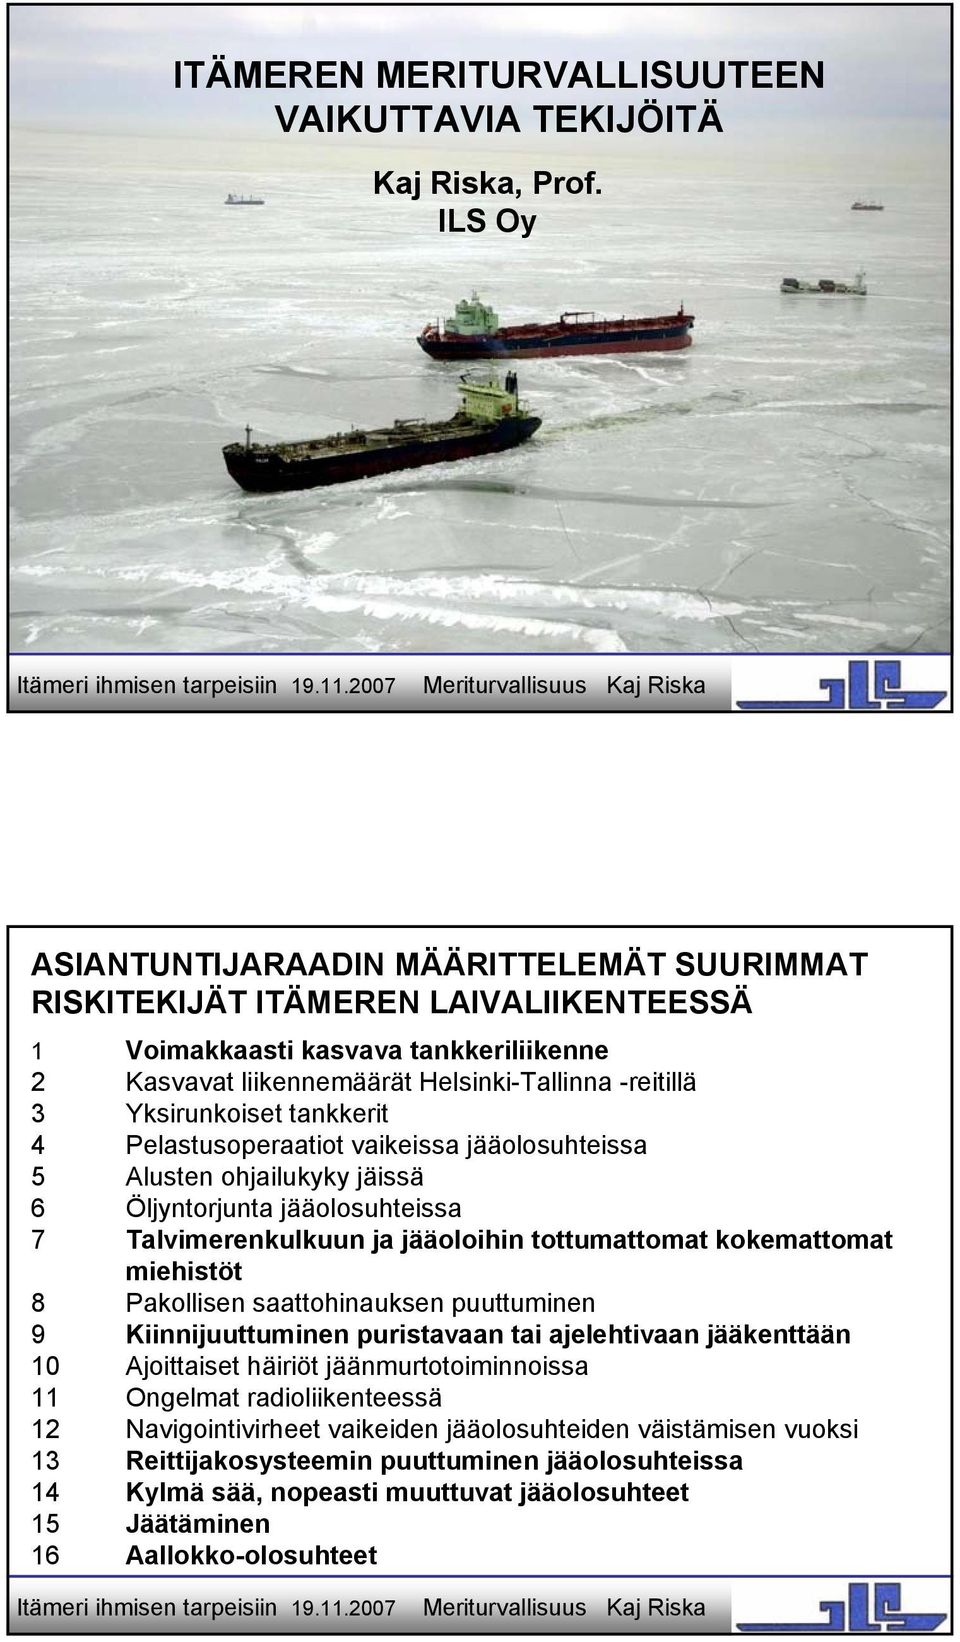 tankkerit 4 Pelastusoperaatiot vaikeissa jääolosuhteissa 5 Alusten ohjailukyky jäissä 6 Öljyntorjunta jääolosuhteissa 7 Talvimerenkulkuun ja jääoloihin tottumattomat kokemattomat miehistöt 8